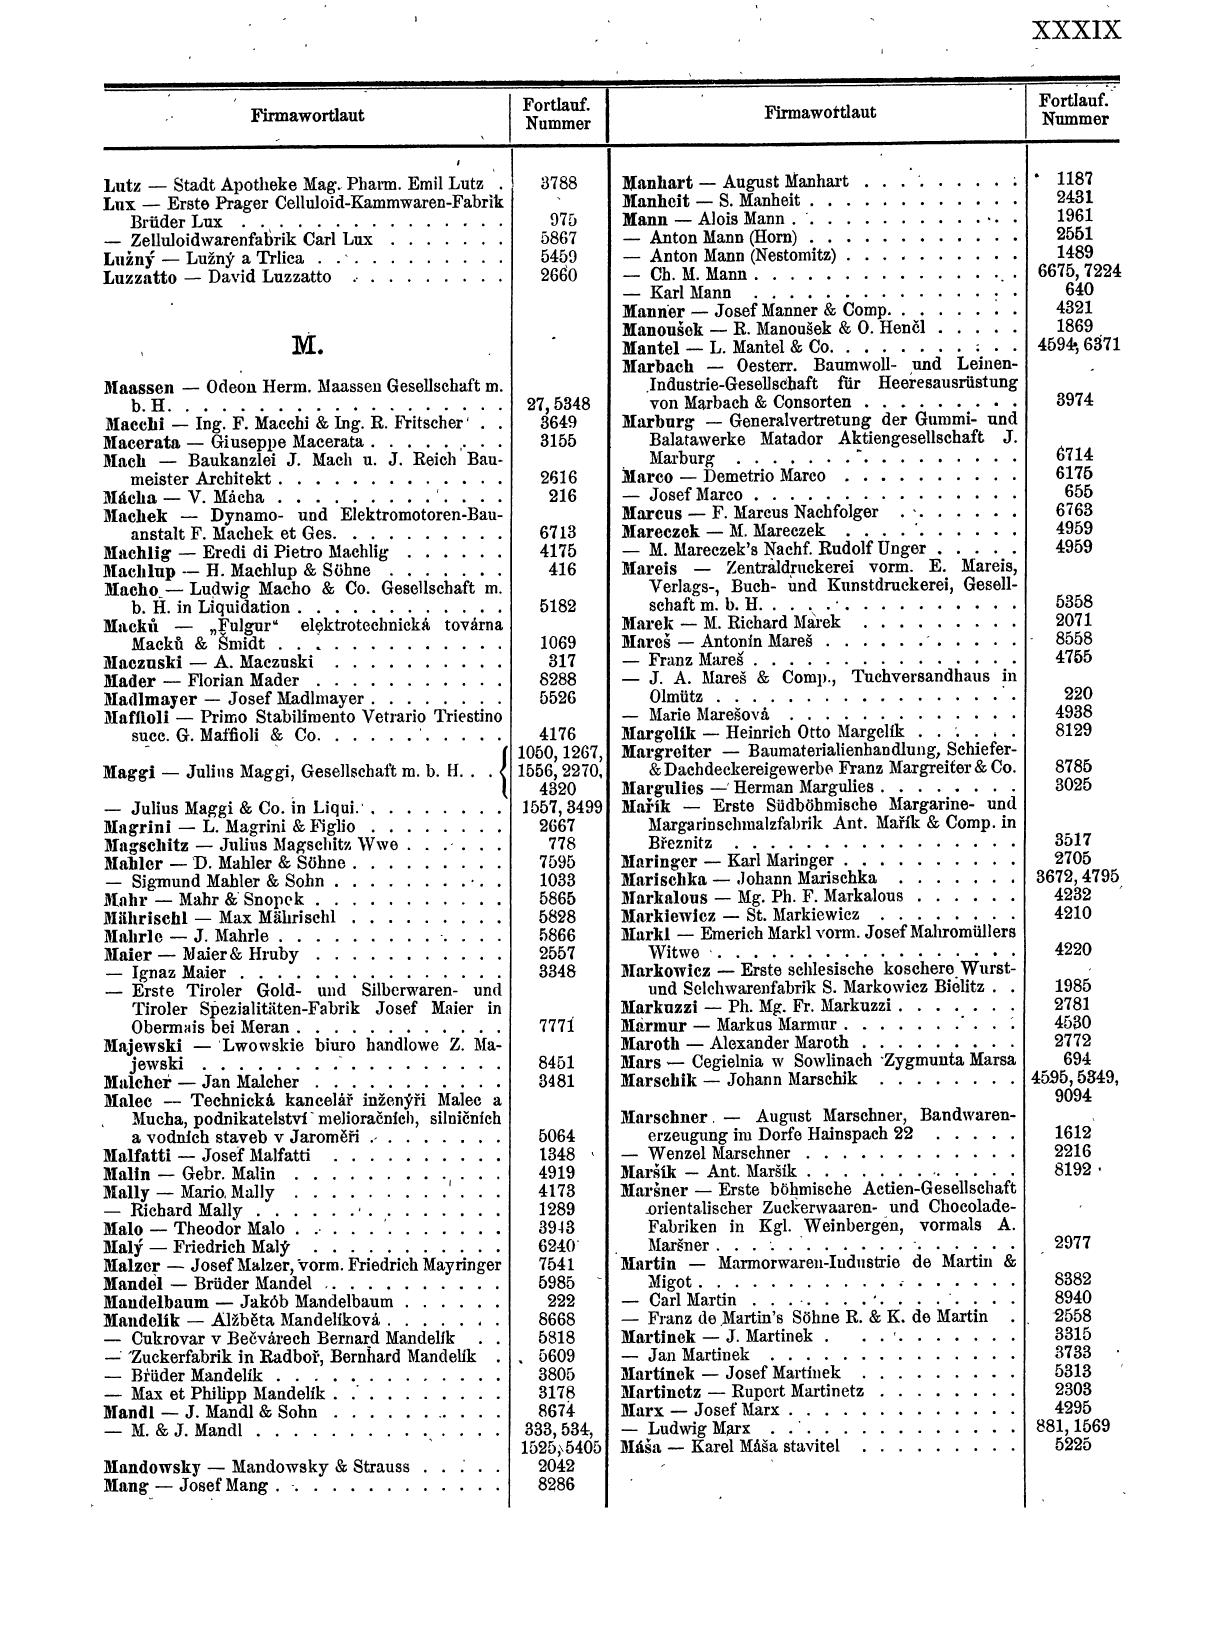 Zentralblatt für die Eintragungen in das Handelsregister 1913, Teil 1 - Seite 47